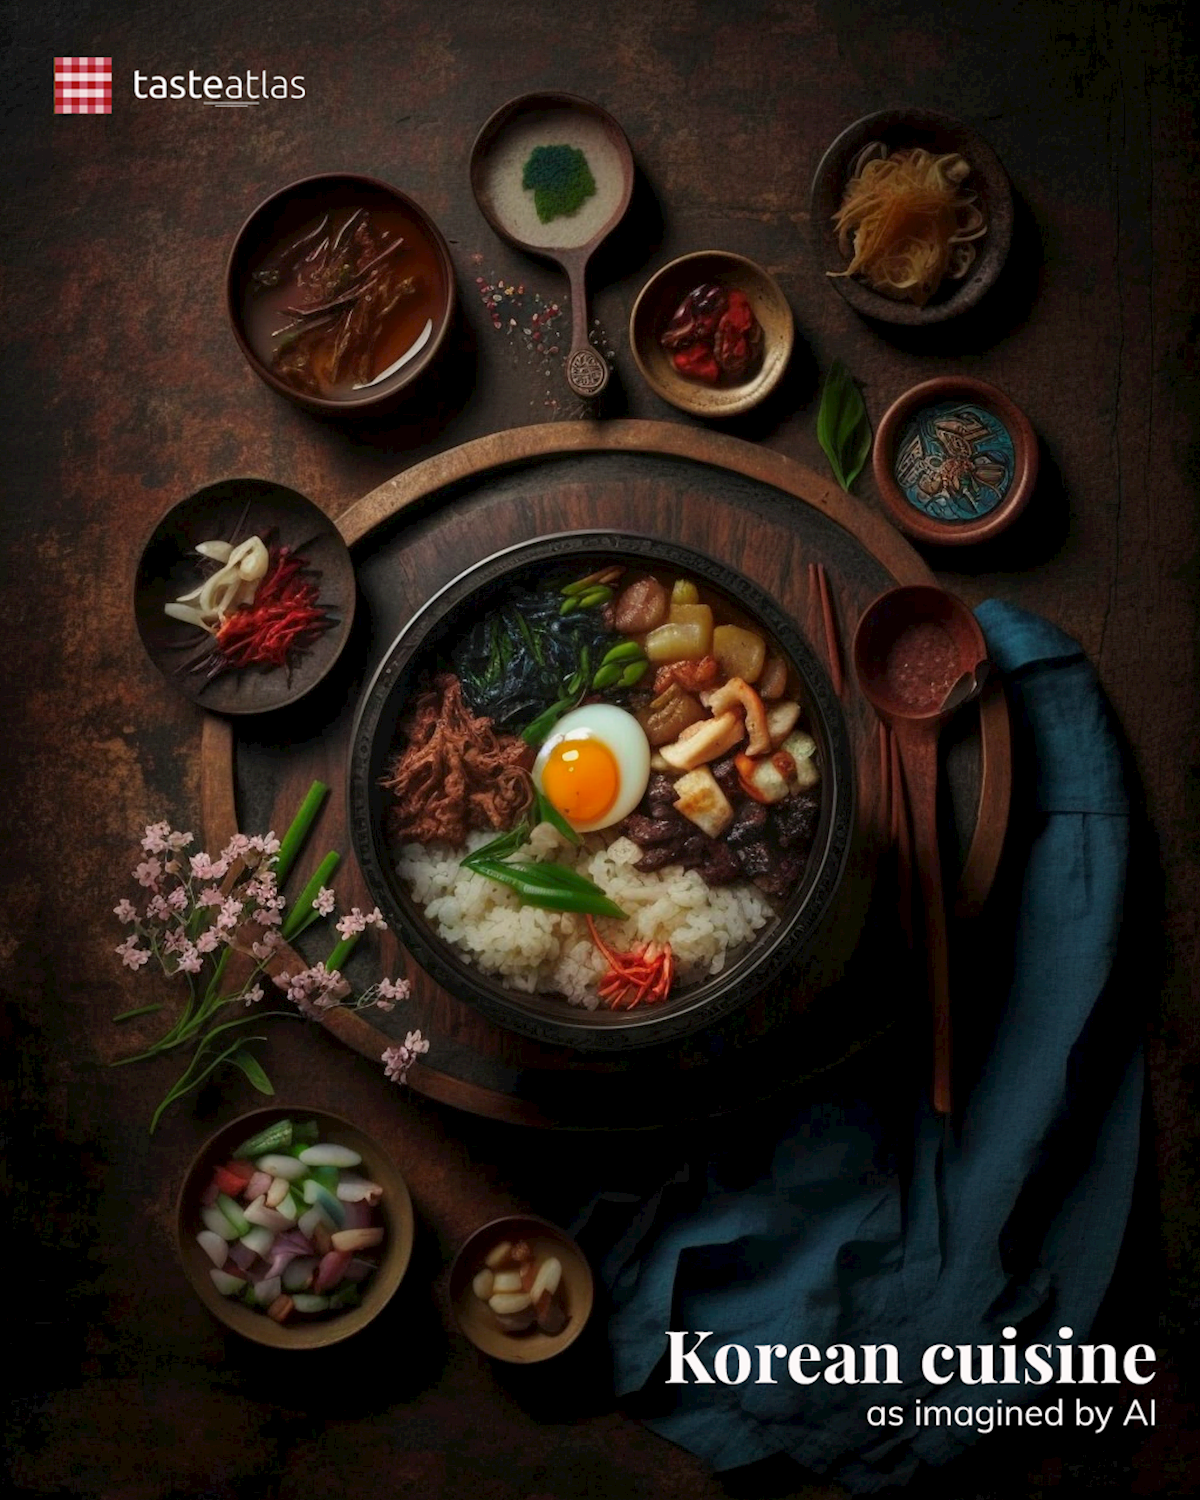 Prompt: Imagine Korean cuisine